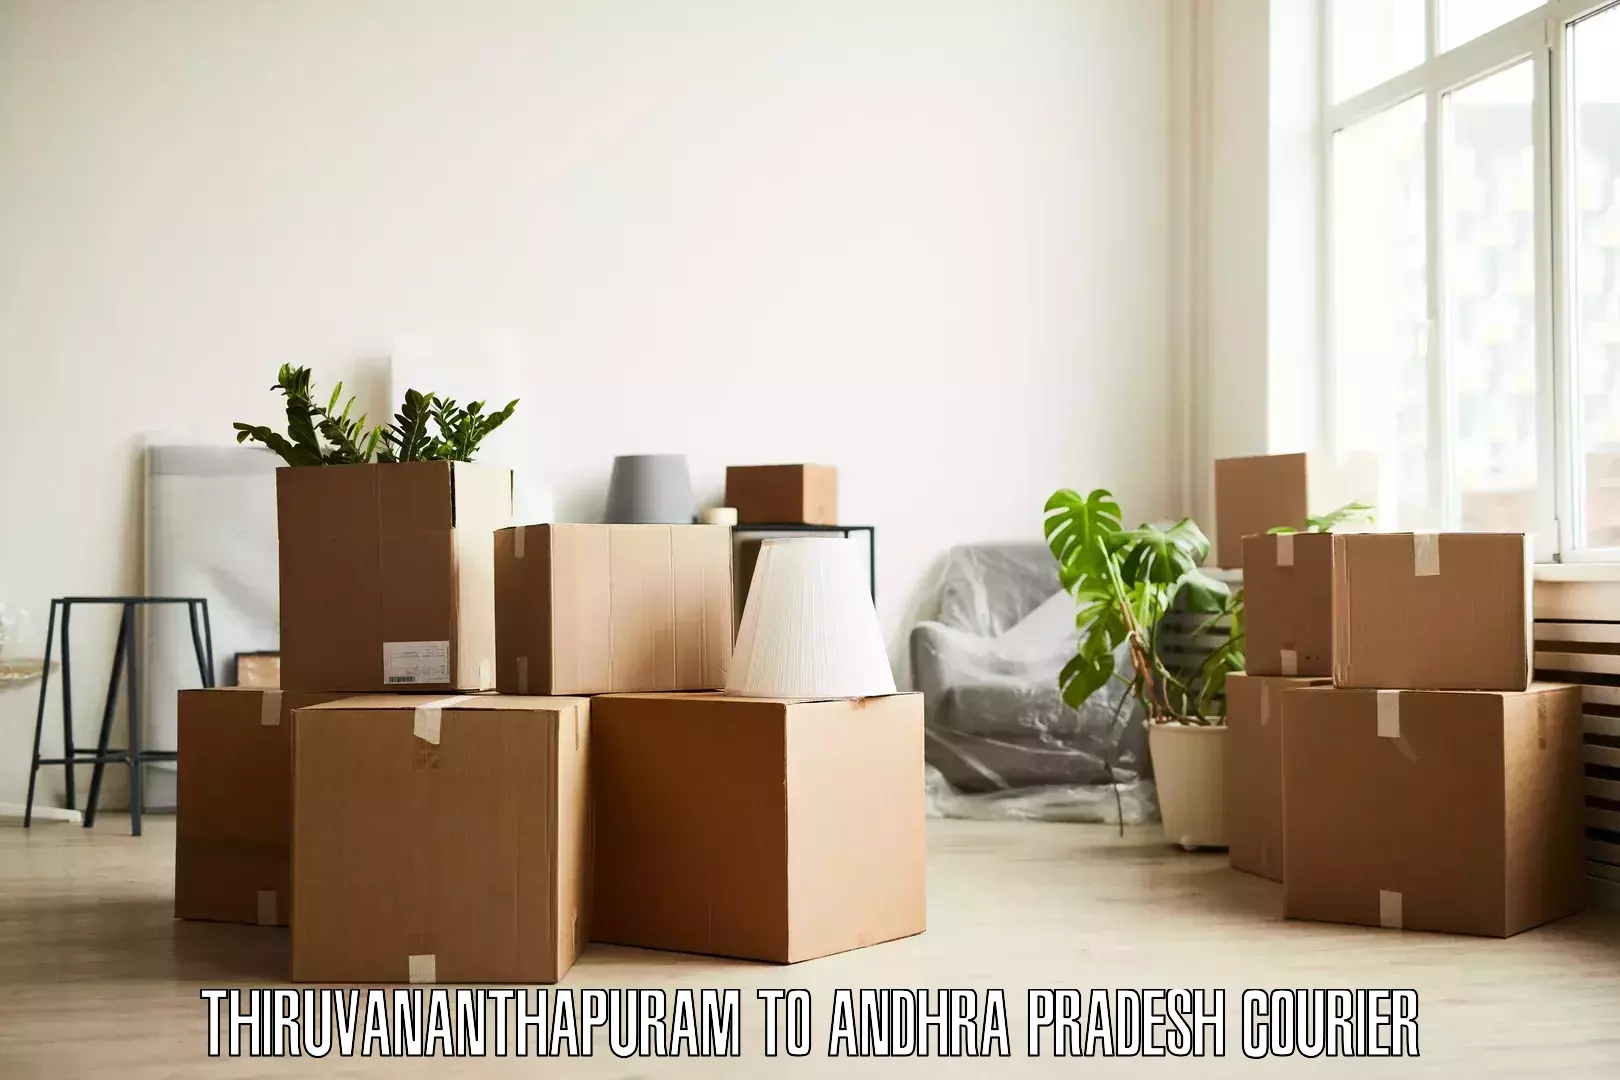 Furniture moving plans Thiruvananthapuram to Tanuku